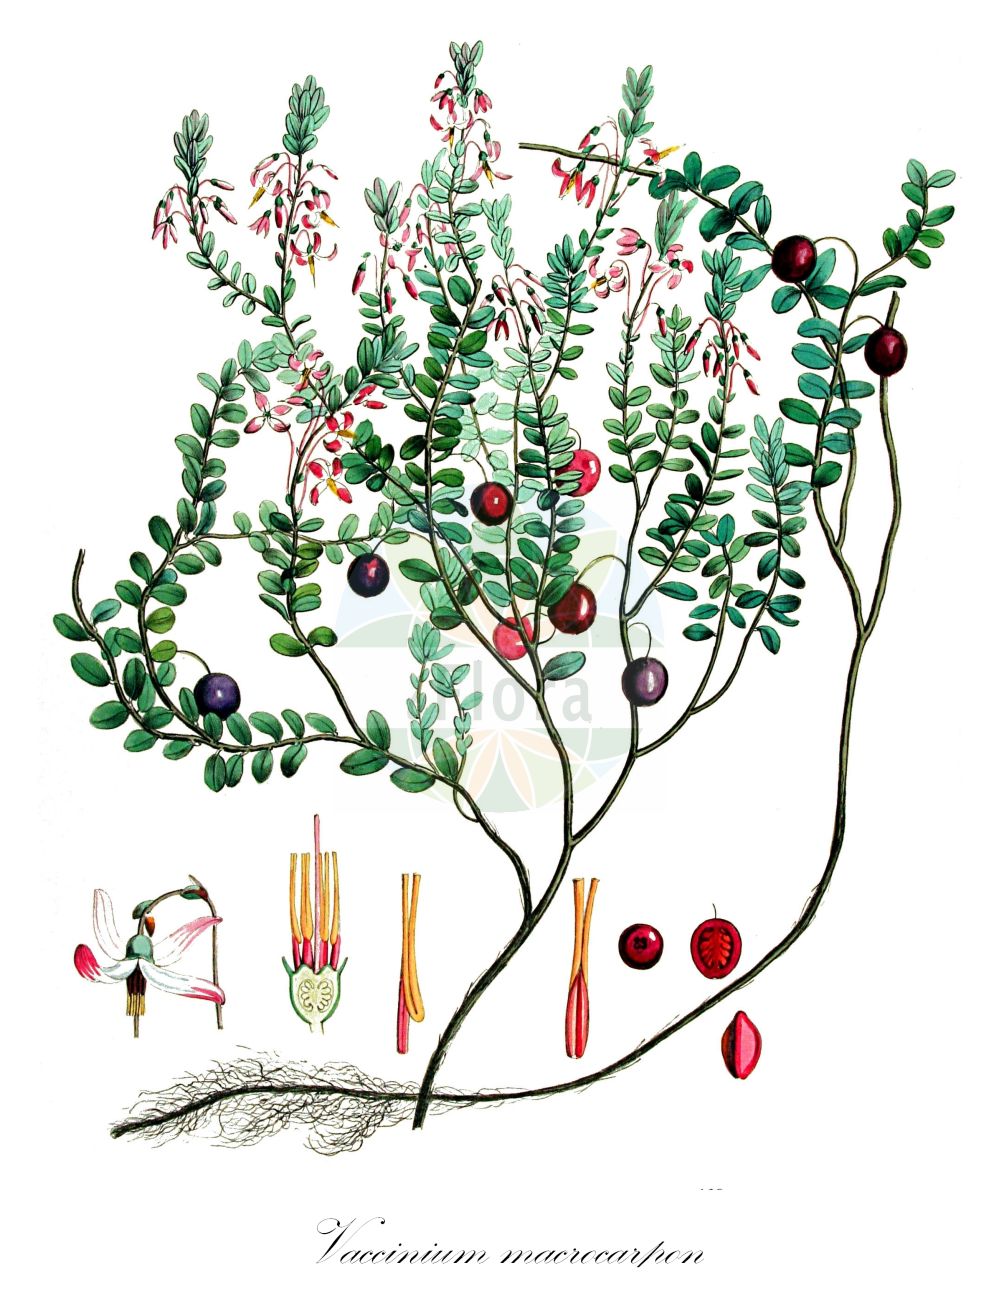 Historische Abbildung von Vaccinium macrocarpon (Großfrüchtige Moosbeere - American Cranberry). Das Bild zeigt Blatt, Bluete, Frucht und Same. ---- Historical Drawing of Vaccinium macrocarpon (Großfrüchtige Moosbeere - American Cranberry). The image is showing leaf, flower, fruit and seed.(Vaccinium macrocarpon,Großfrüchtige Moosbeere,American Cranberry,Oxycoccus macrocarpus,Vaccinium macrocarpon,Grossfruechtige Moosbeere,American Cranberry,Cranberry,Large Cranberry,Large-fruited Cranberry,Vaccinium,Heidelbeere,Blueberry,Ericaceae,Heidekrautgewächse,Heath family,Blatt,Bluete,Frucht,Same,leaf,flower,fruit,seed,Kops (1800-1934))